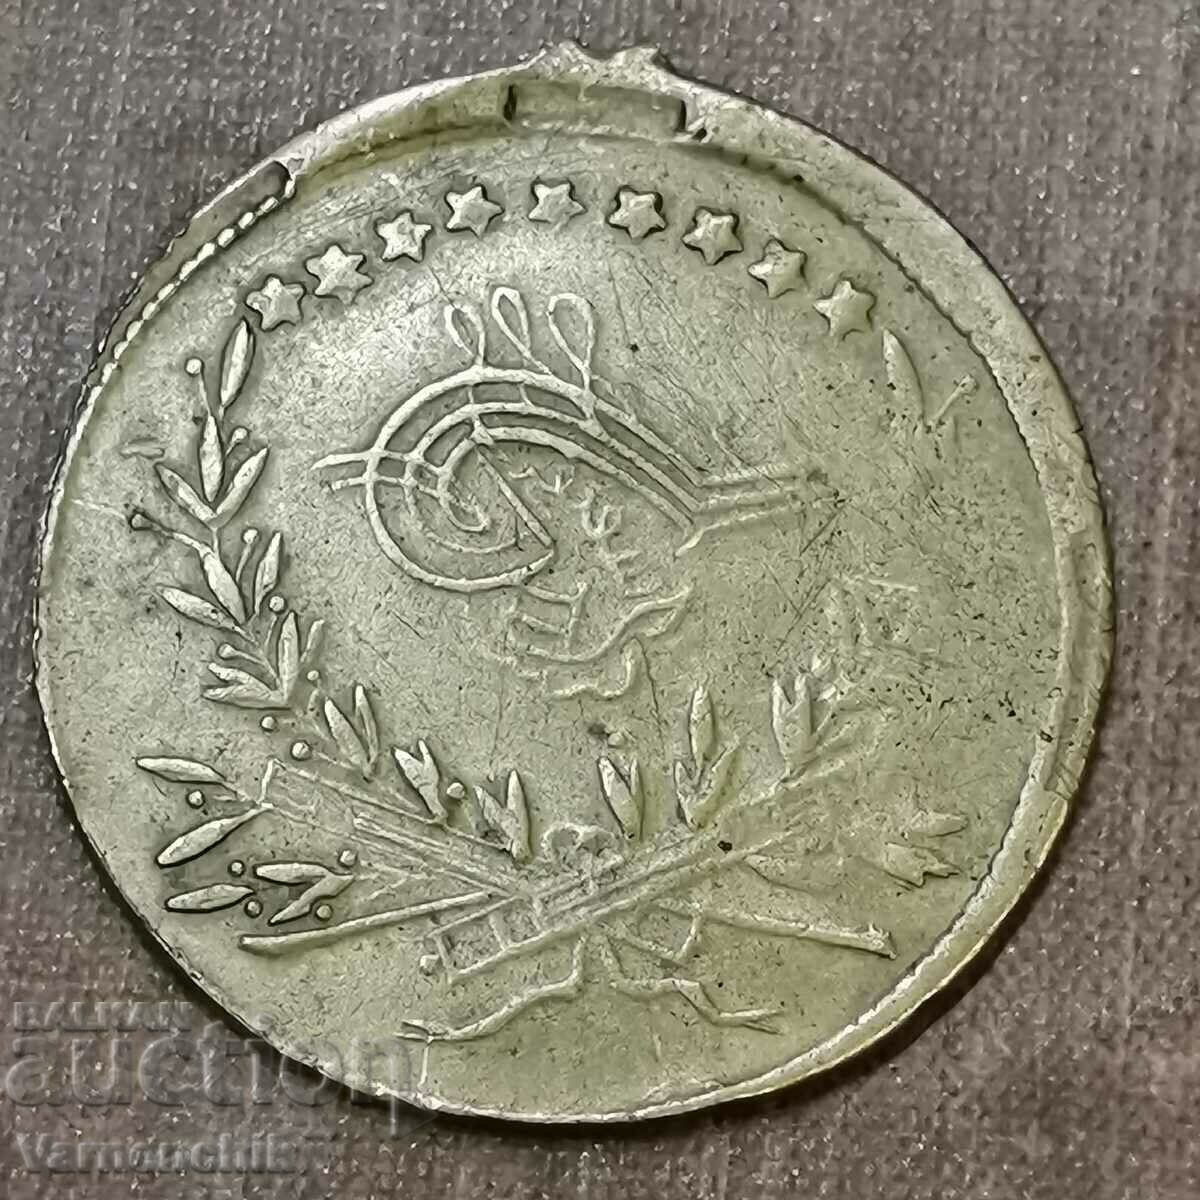 Σπάνιο τουρκο-οθωμανικό μετάλλιο 19ος αιώνας ΧΑΛΚΙΝΟ